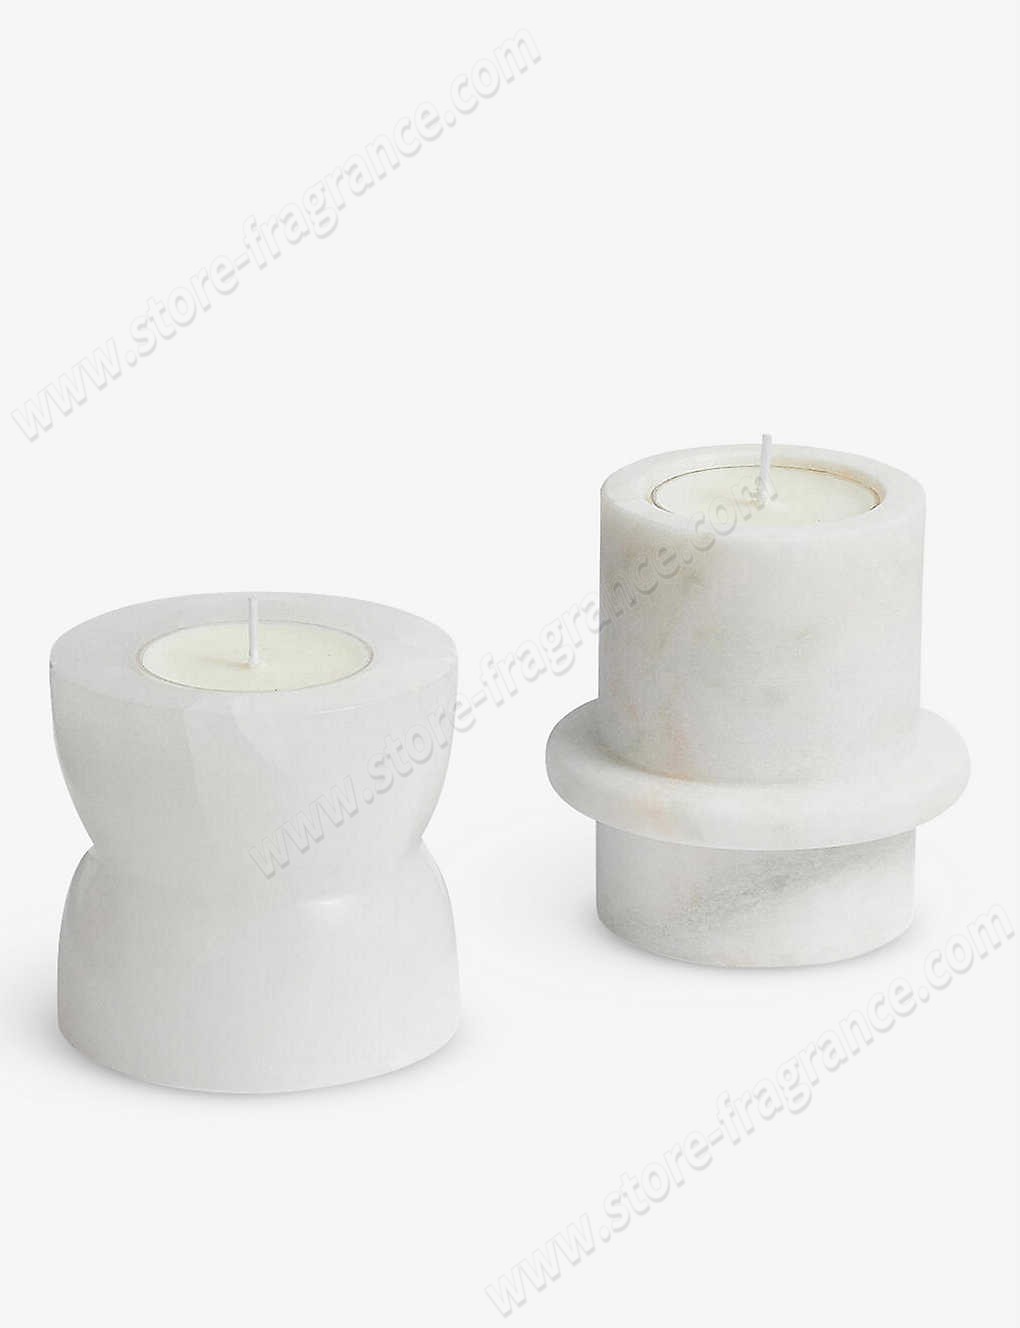 SOHO HOME/Hillerod marble candleholder set Limit Offer - SOHO HOME/Hillerod marble candleholder set Limit Offer